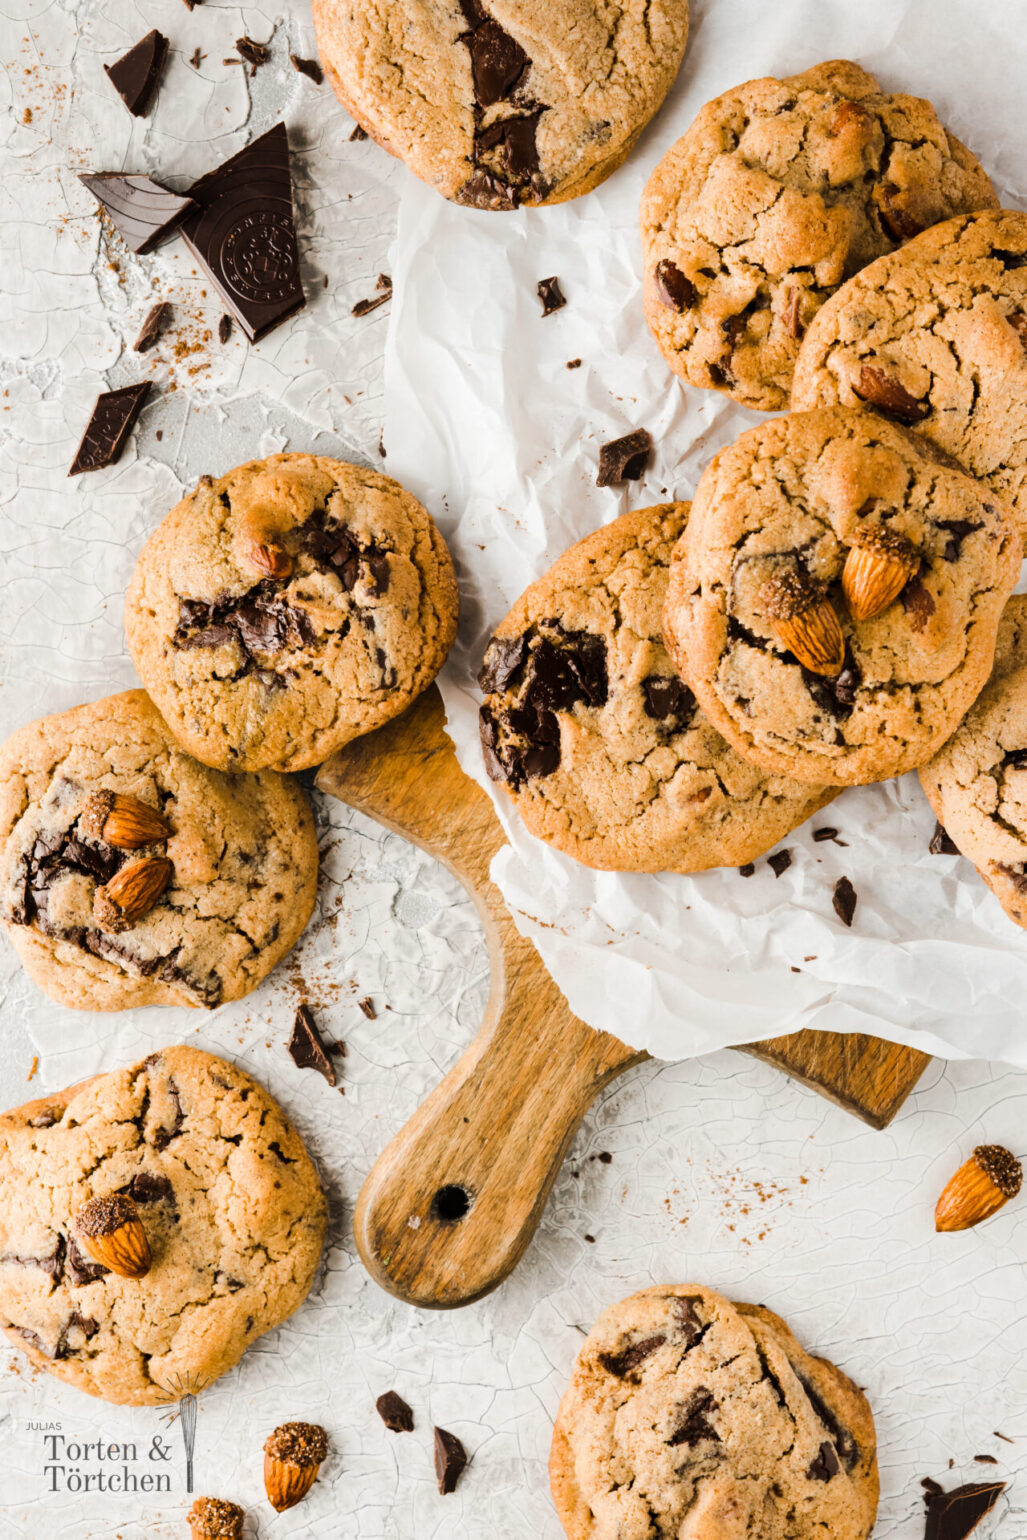 Einfaches gelingsicheres Rezept für weiche Mandel Zimt Cookies mit zart schmelzender dunkler Schokolade. Die besten weichen Kekse mit Nüssen! #Rezept #Cookies #Mandelkekse #Schokokekse #backen #rezept